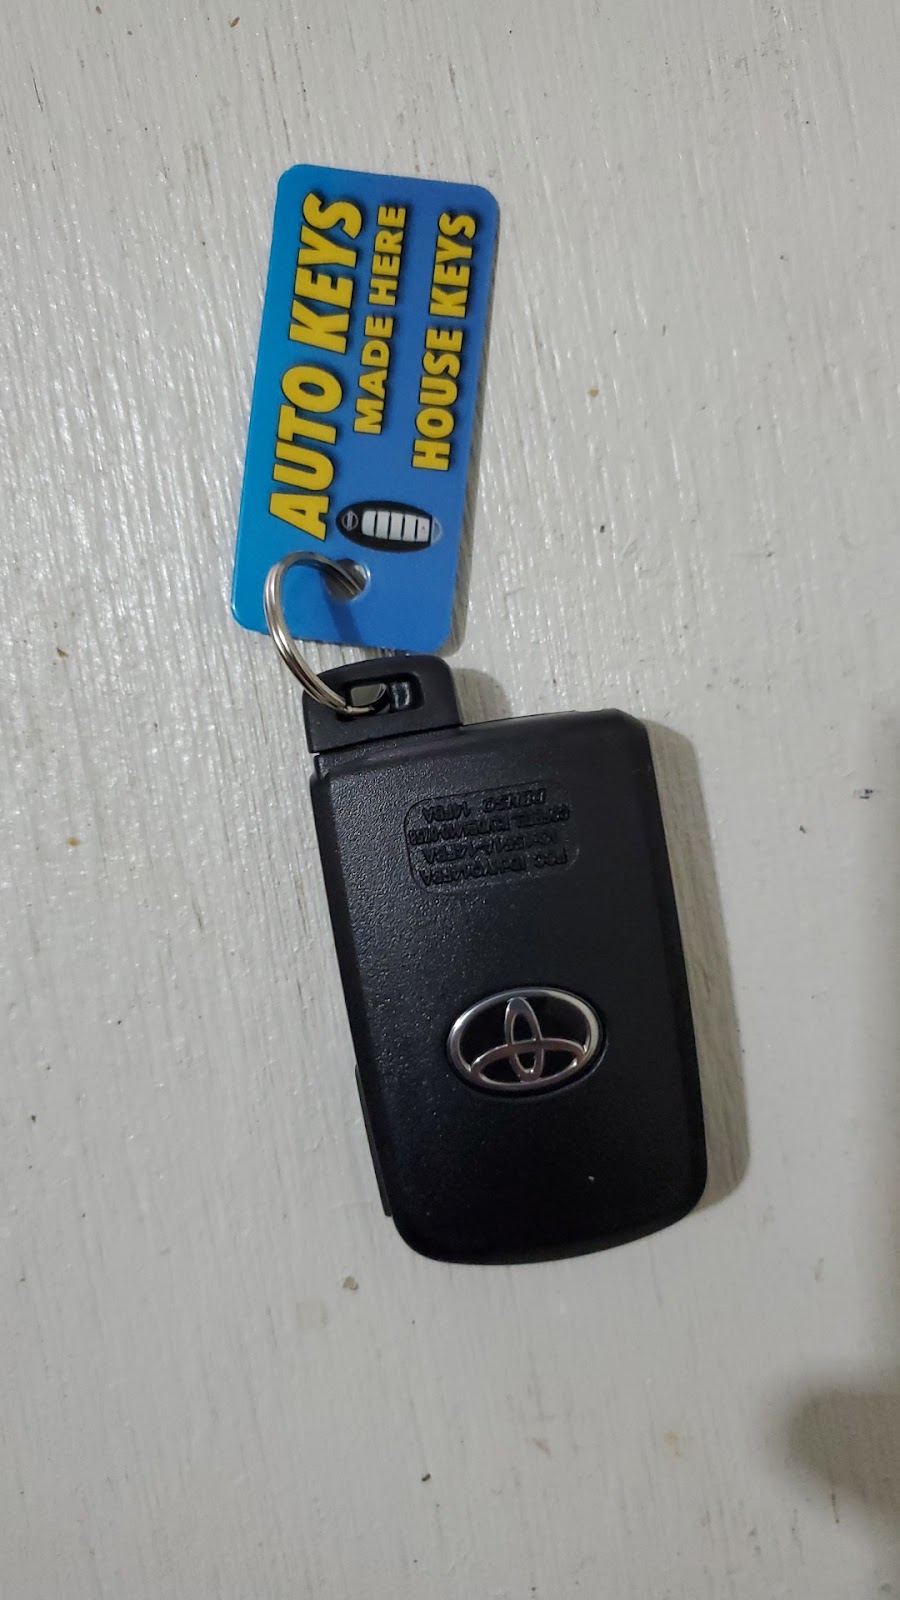 Auto Keys Made Here | 2203 New England Thruway, The Bronx, NY 10475 | Phone: (718) 671-7777